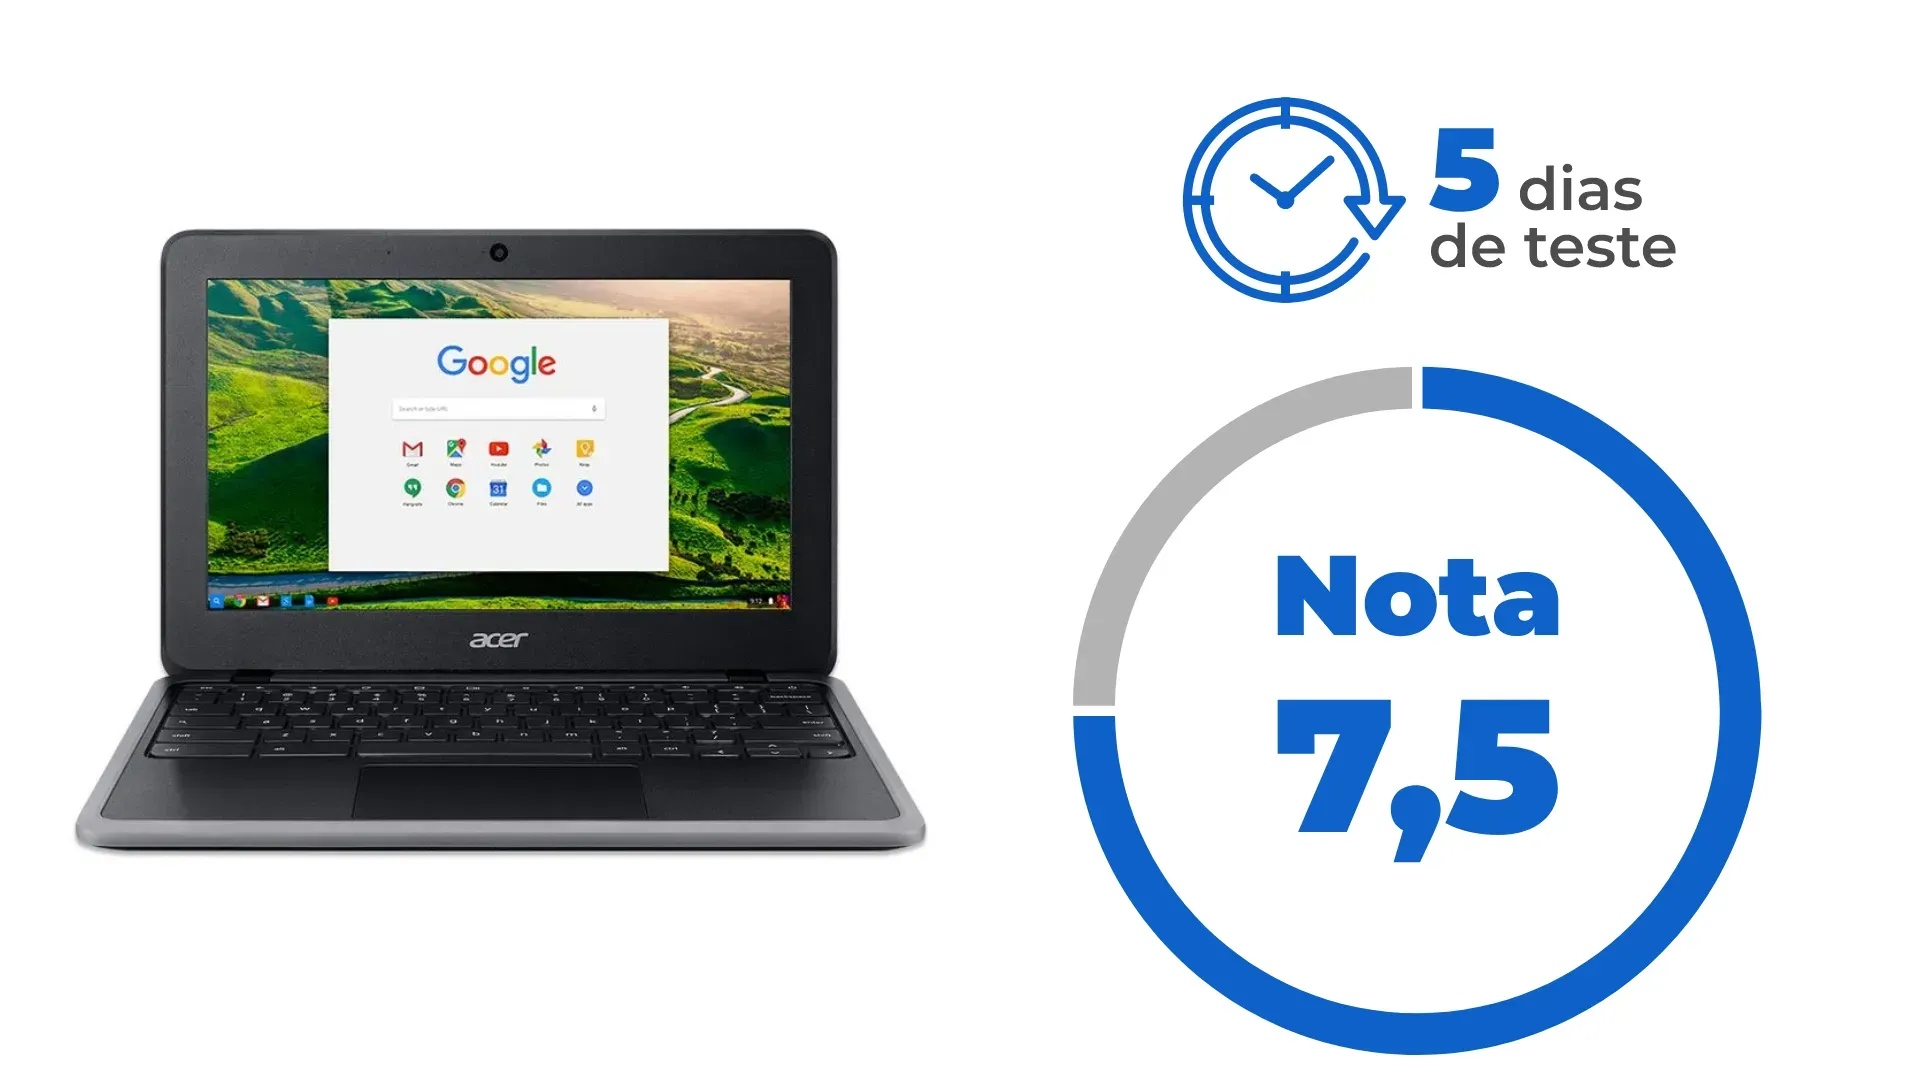 Ilustração mostrando nota 7,5 do Acer Chromebook, assim como esclarecendo que o notebook foi testado por 5 dias